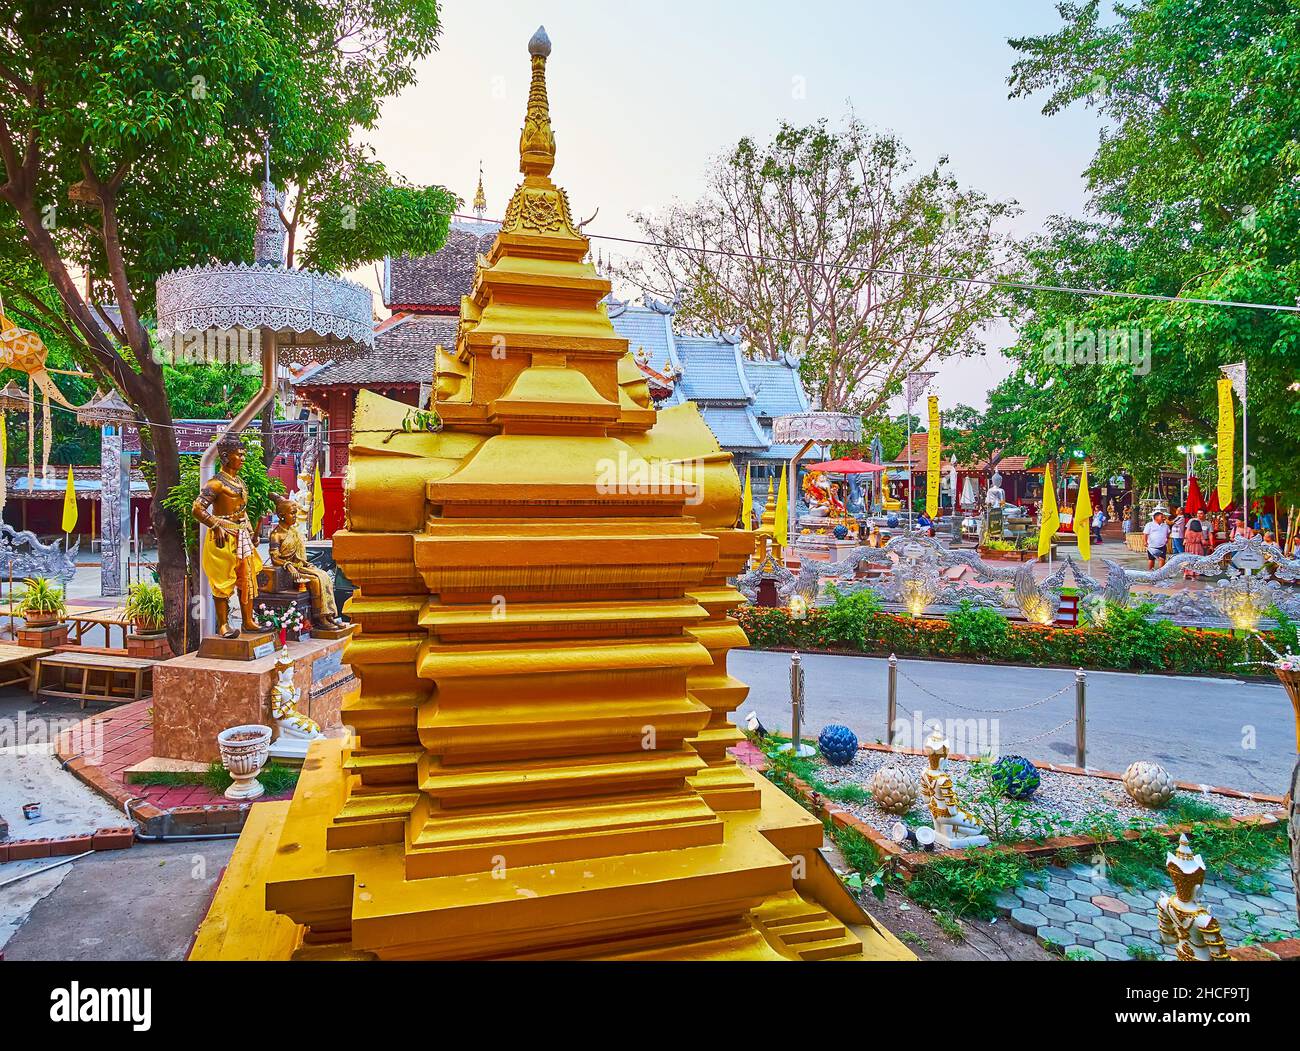 Le petit mondope doré dans le jardin du Temple historique de l'argent (Wat Sri Suphan), Chiang Mai, Thaïlande Banque D'Images